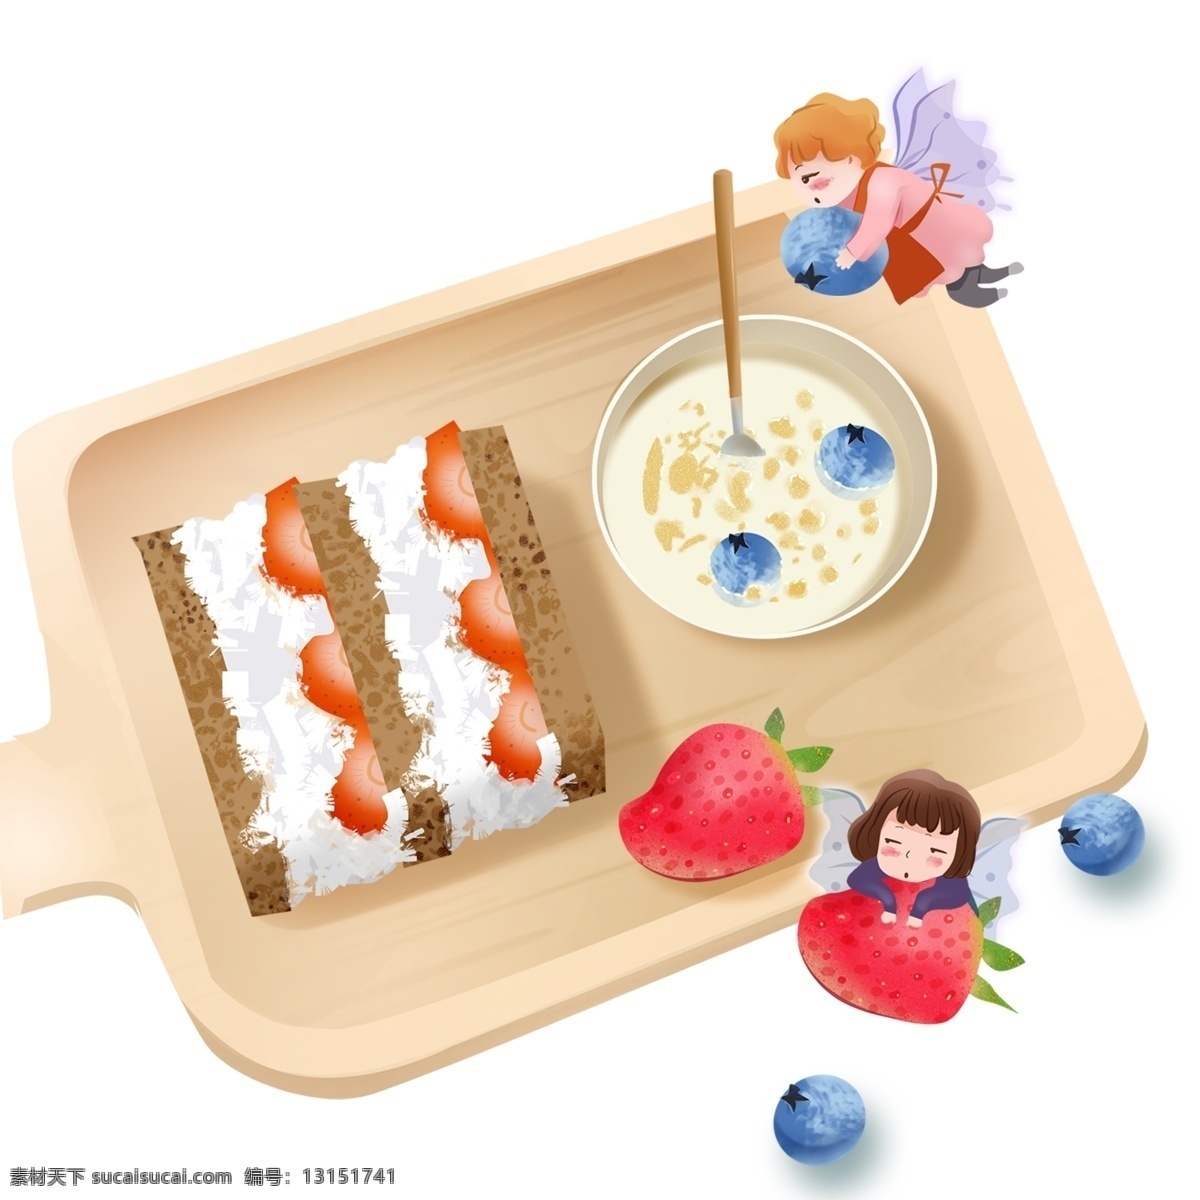 托盘 上 美味 营养 早餐 清新 女孩 精灵 蛋糕 插画 手绘 燕麦 水果